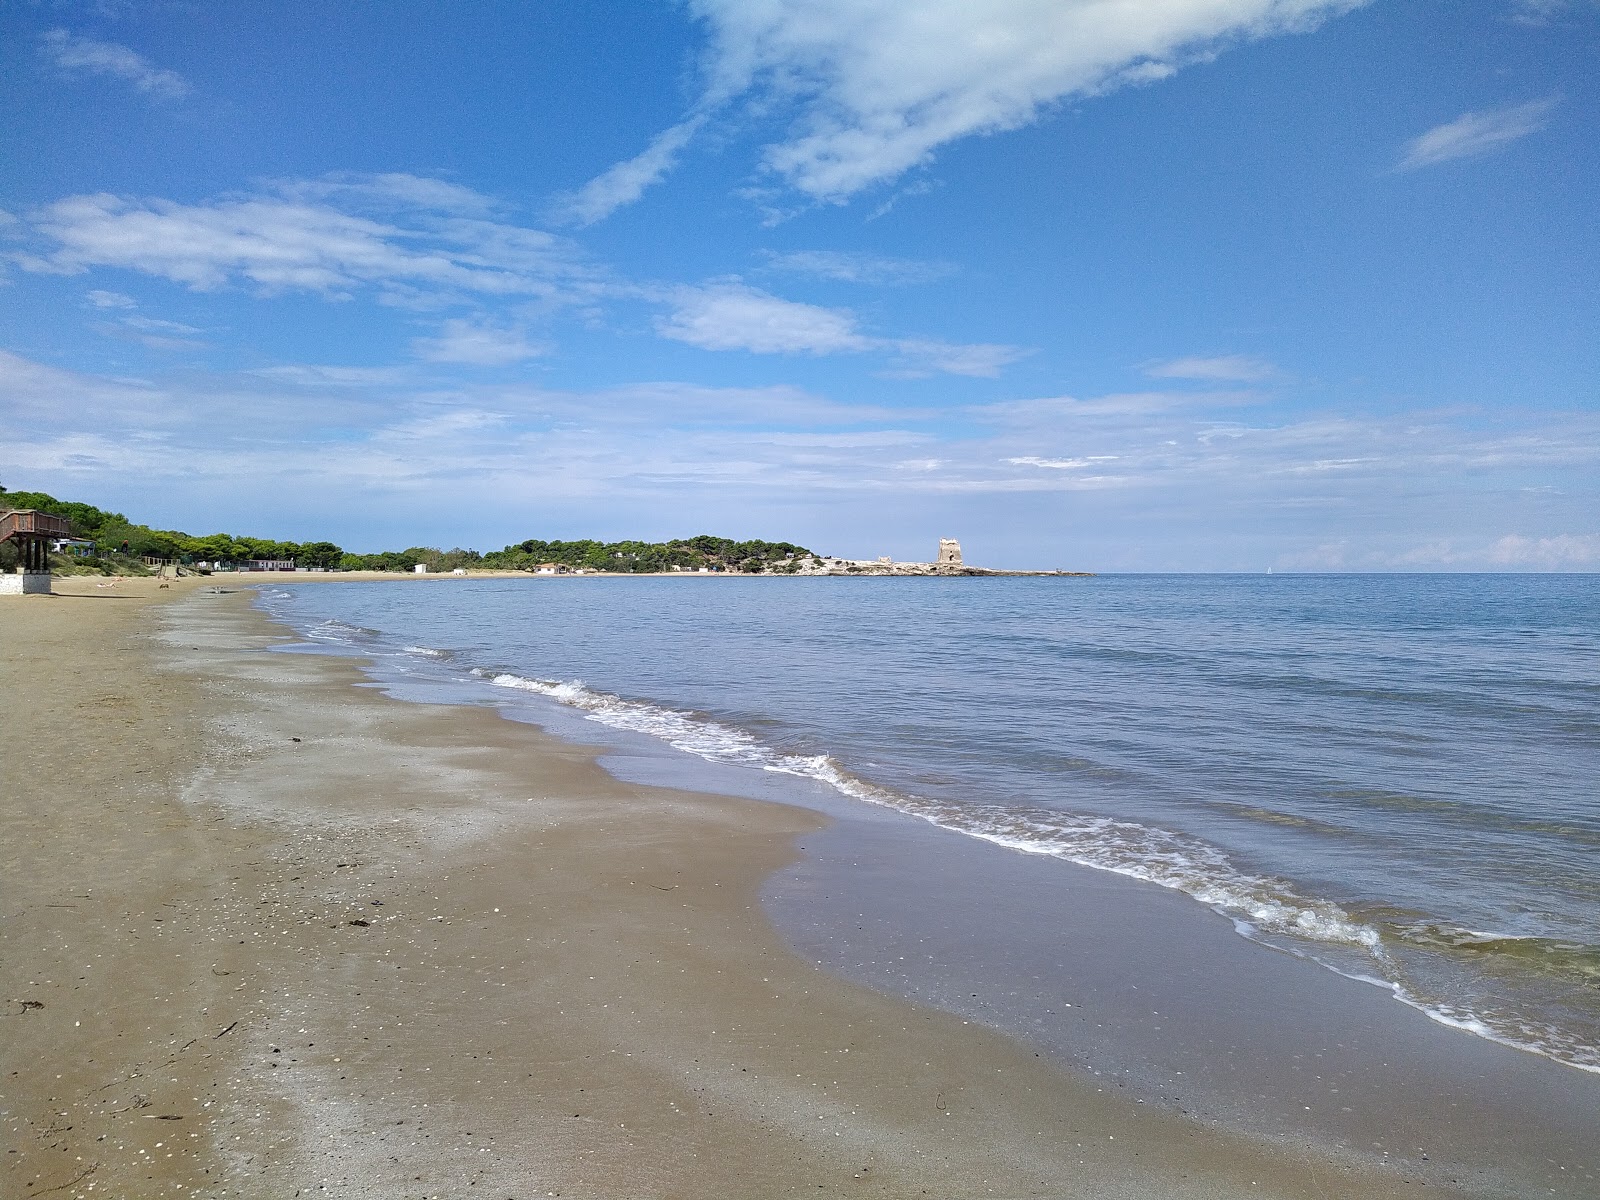 Foto de Spiaggia di Sfinale - lugar popular entre los conocedores del relax